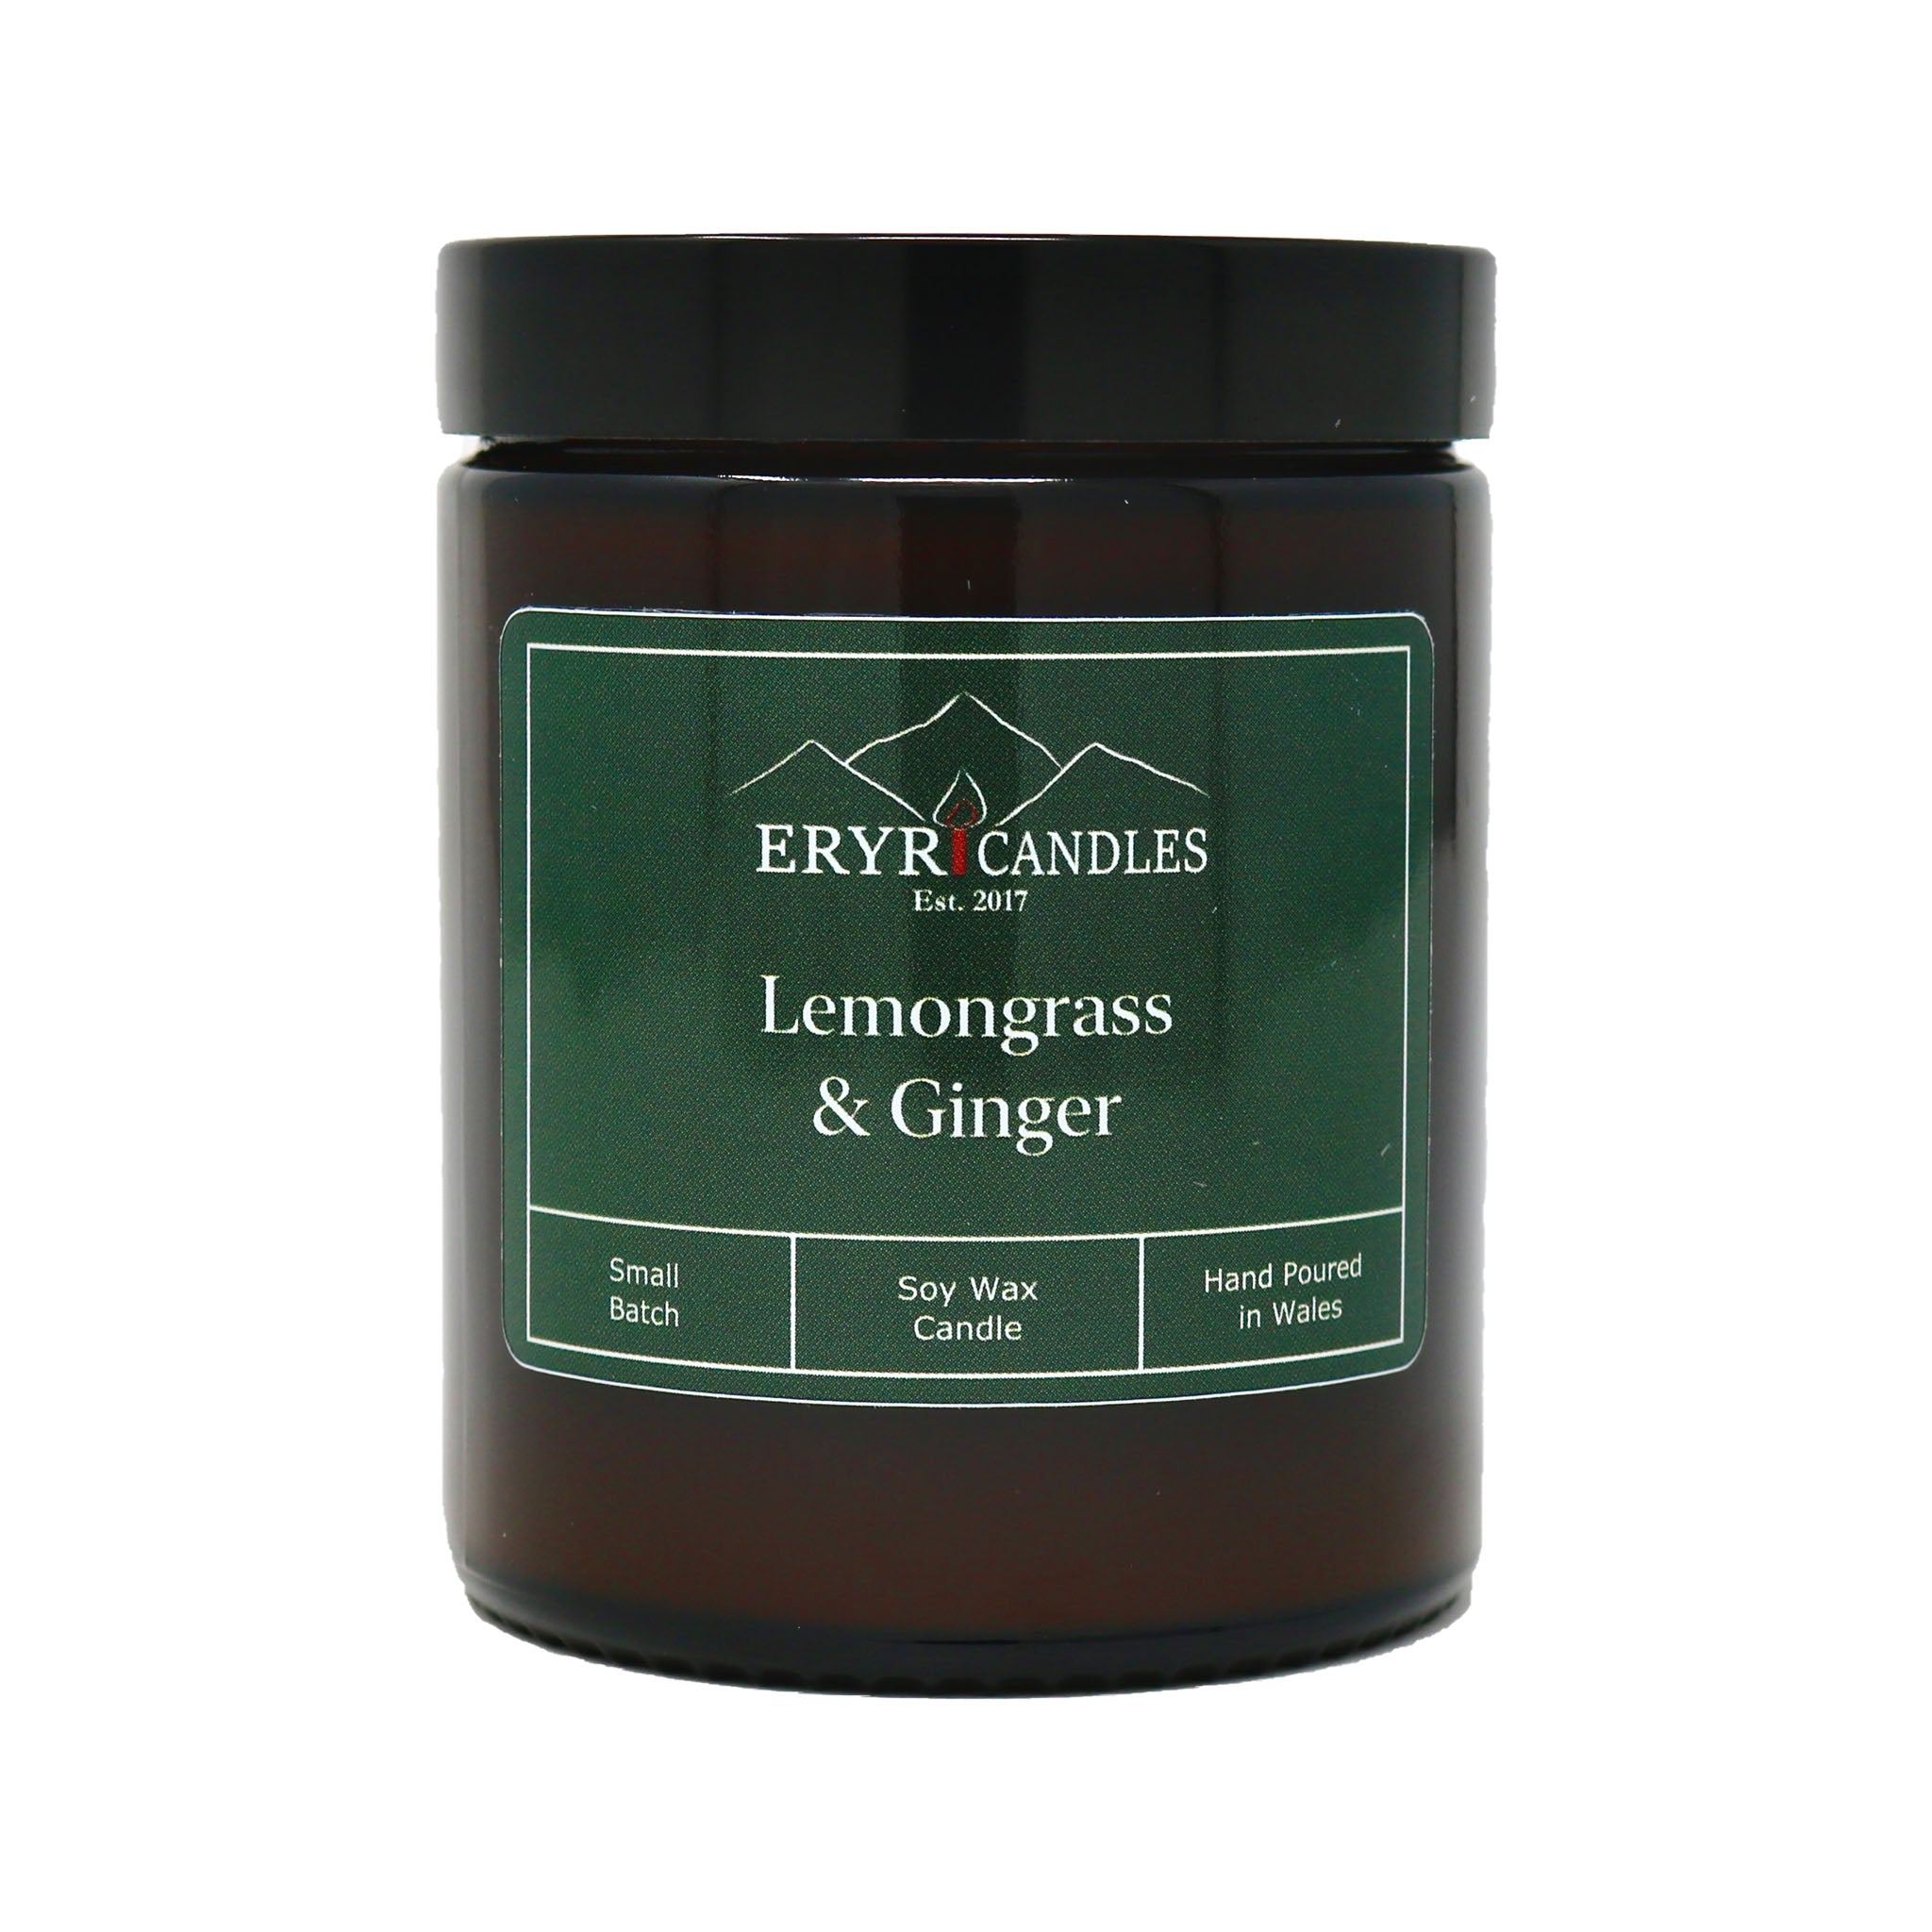 Lemongrass & Ginger